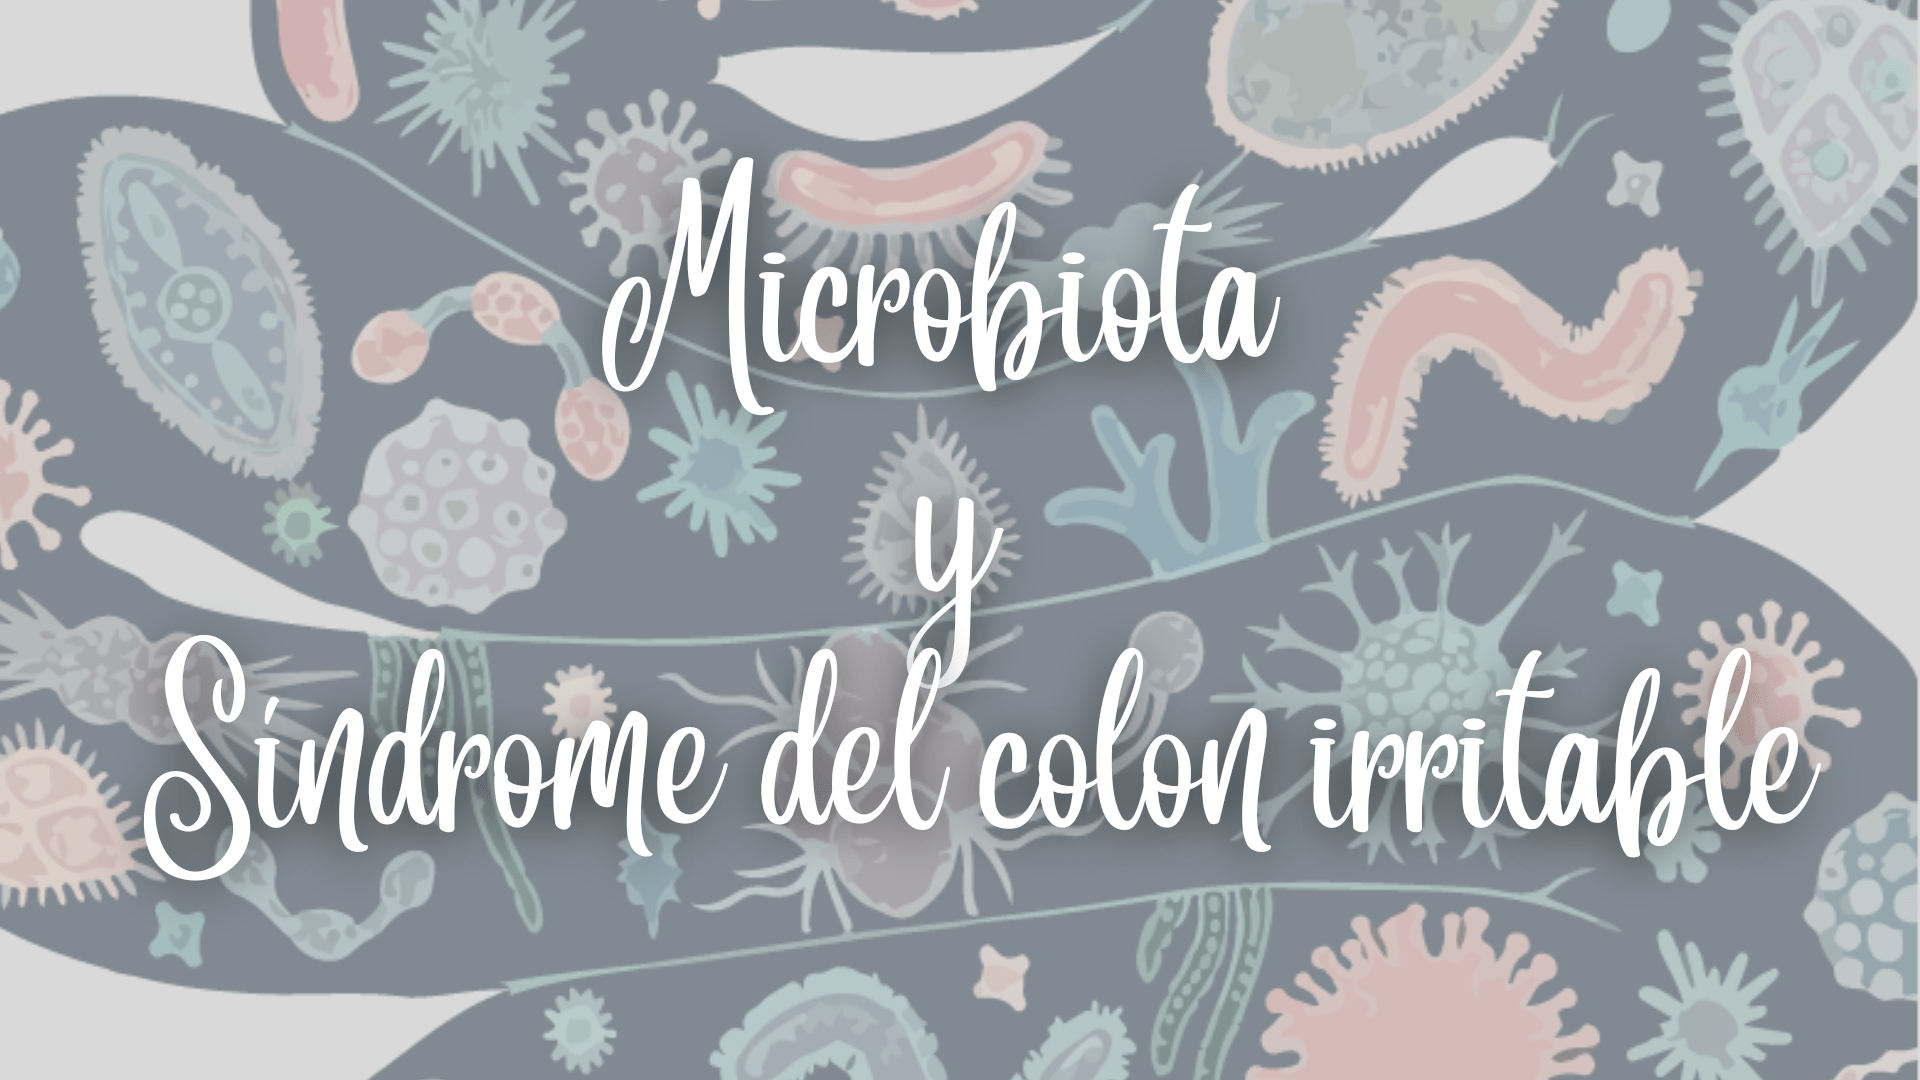 Portada blog microbiota y síndrome del colon irritable